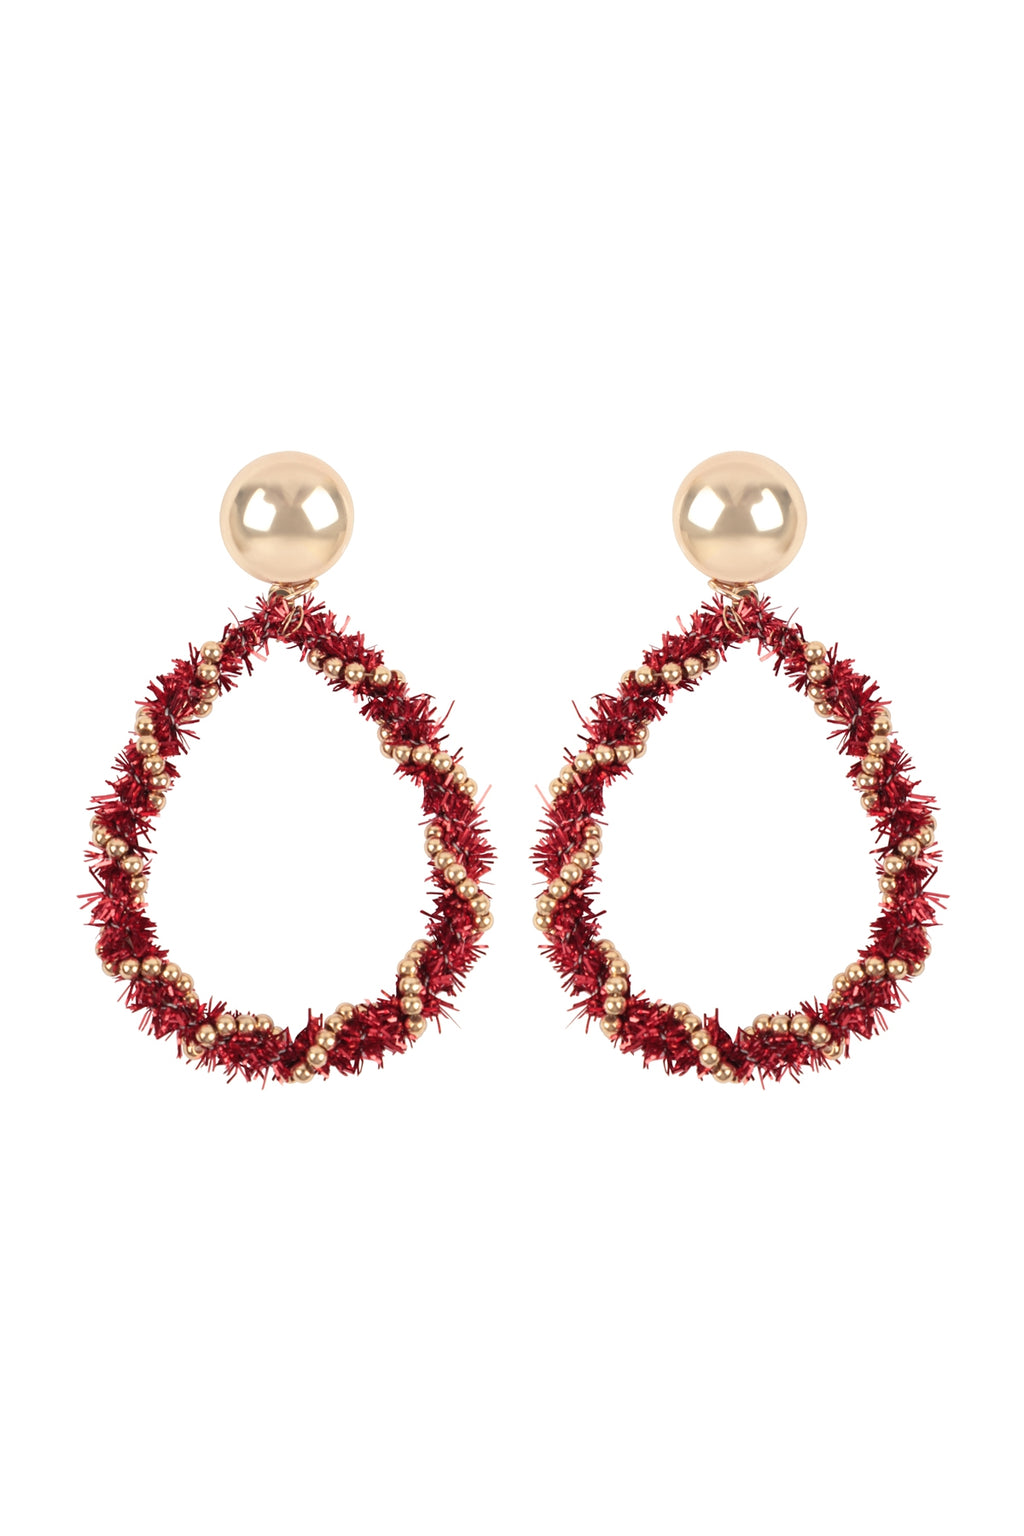 Christmas Wreath Tinsel Teardrop Shape Earrings Red - Pack of 6